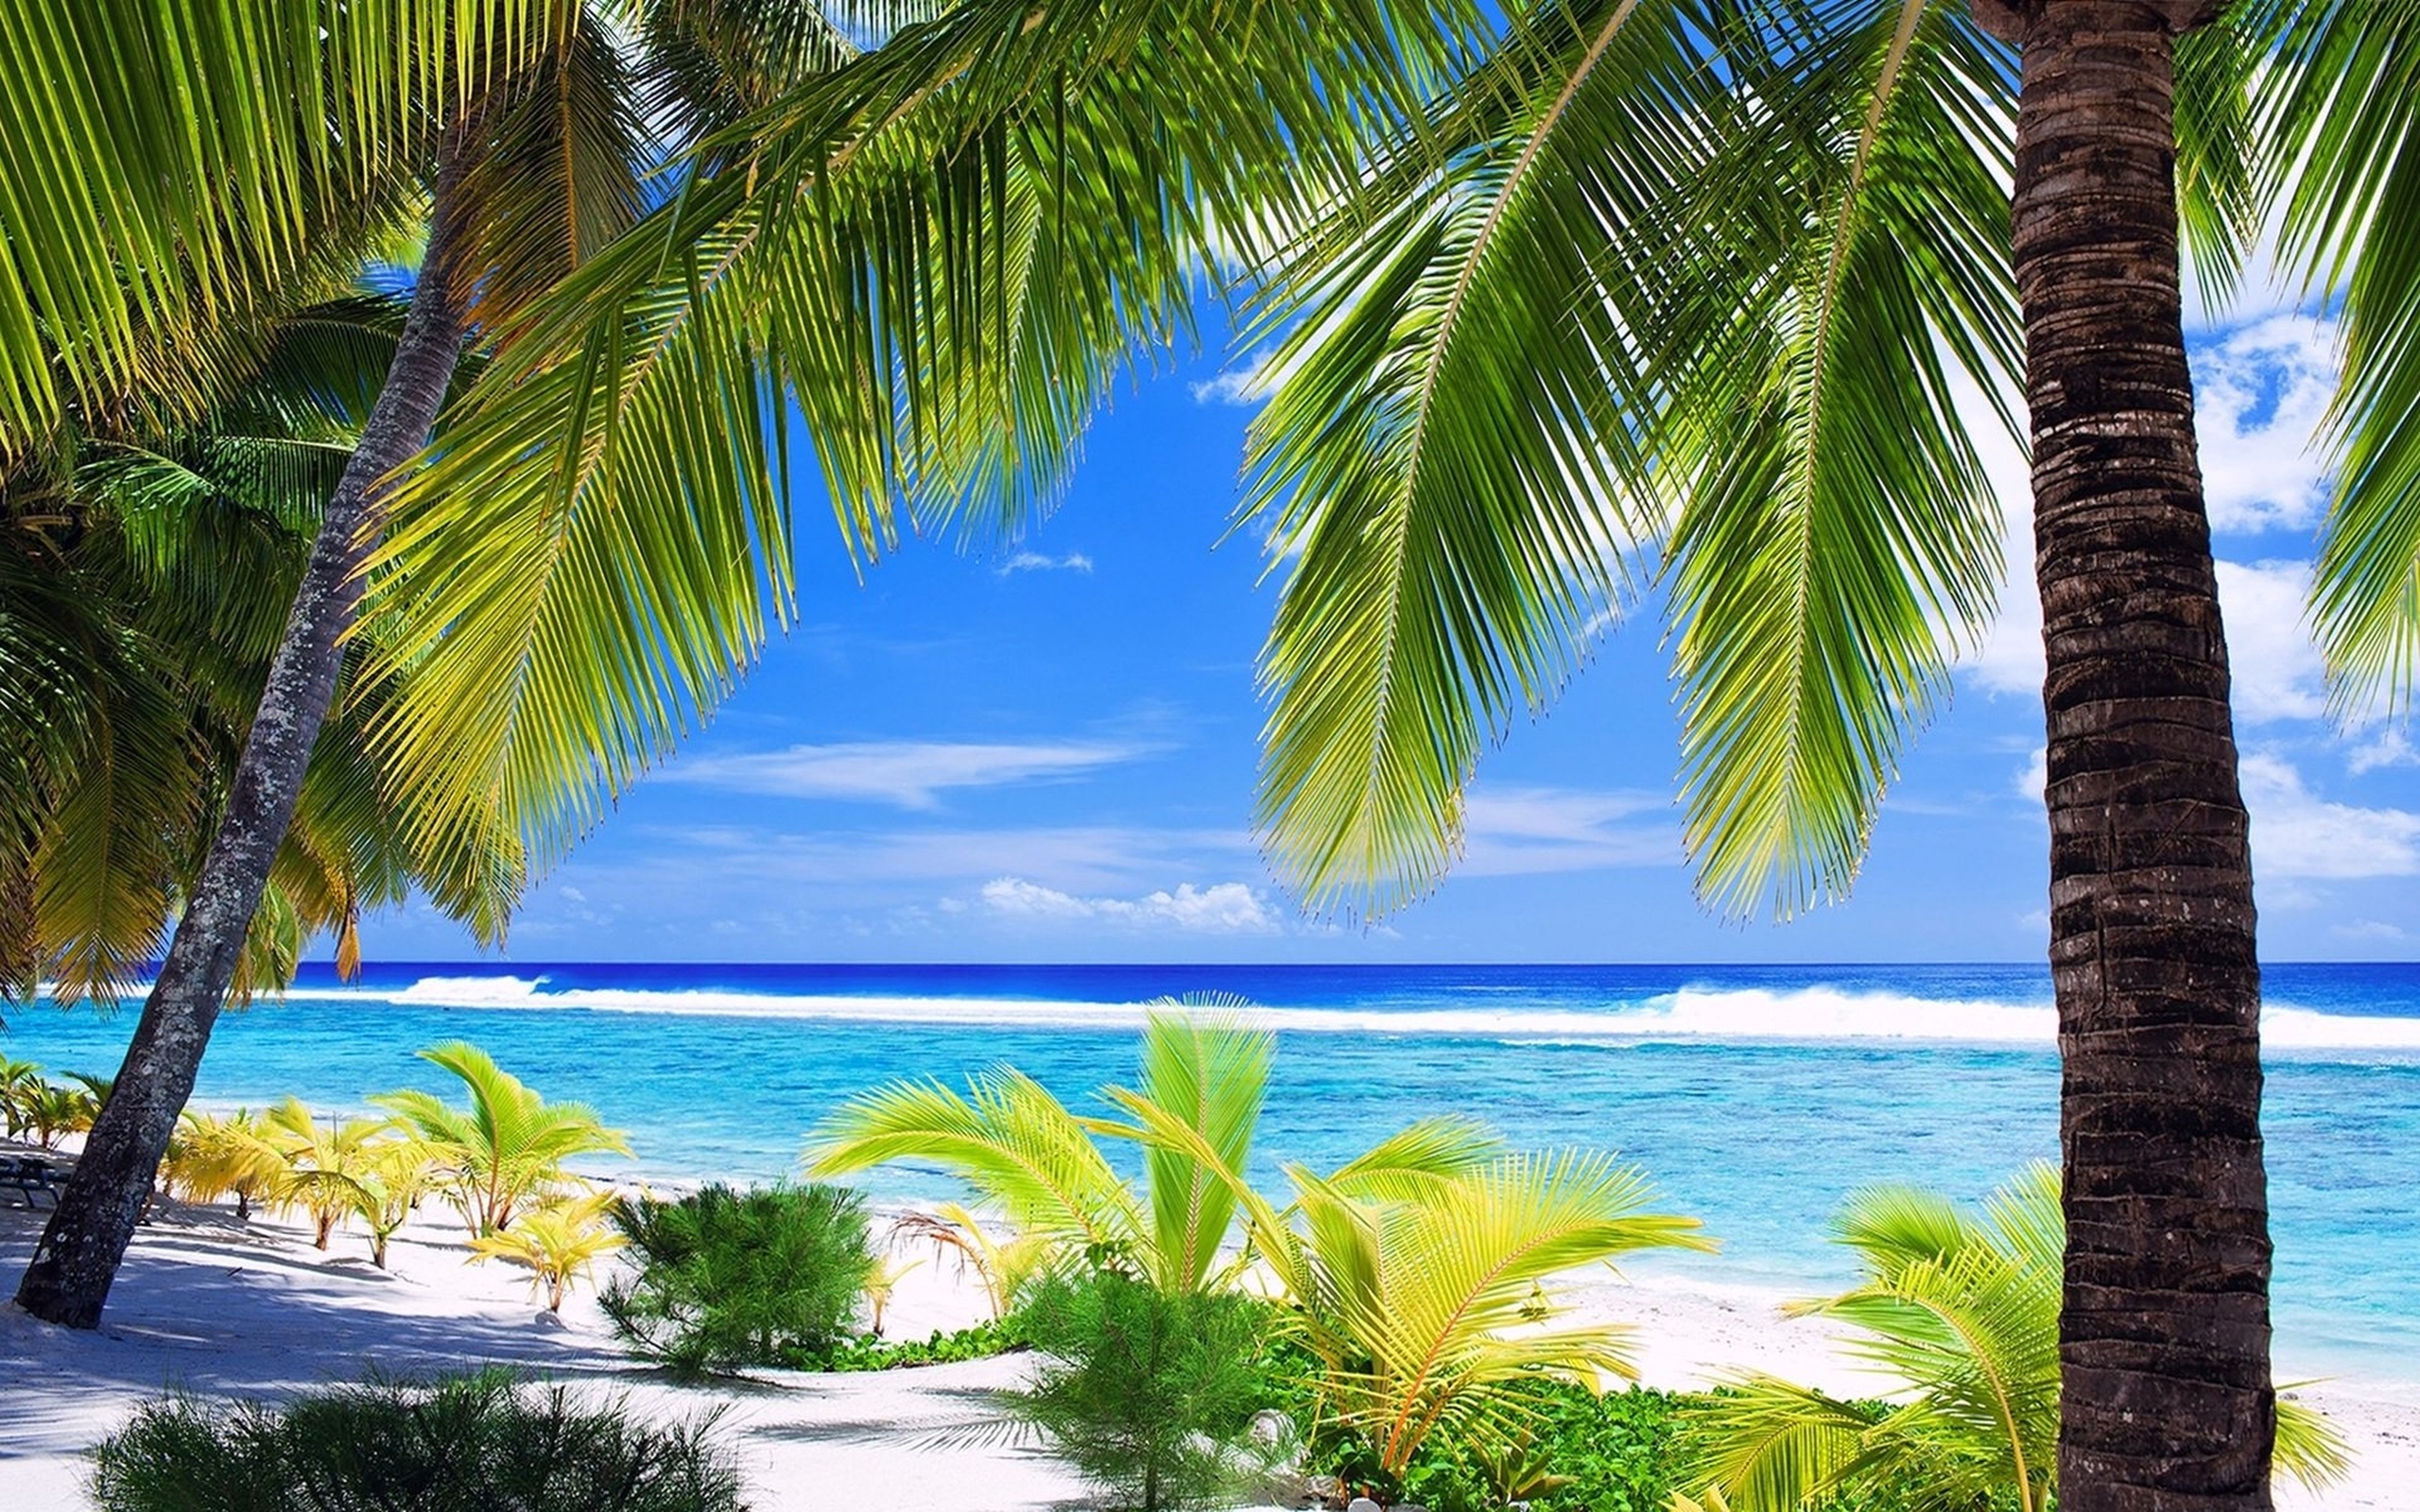 Скачать обои бесплатно Пляж, Пальмы, Тропический, Земля/природа картинка на рабочий стол ПК